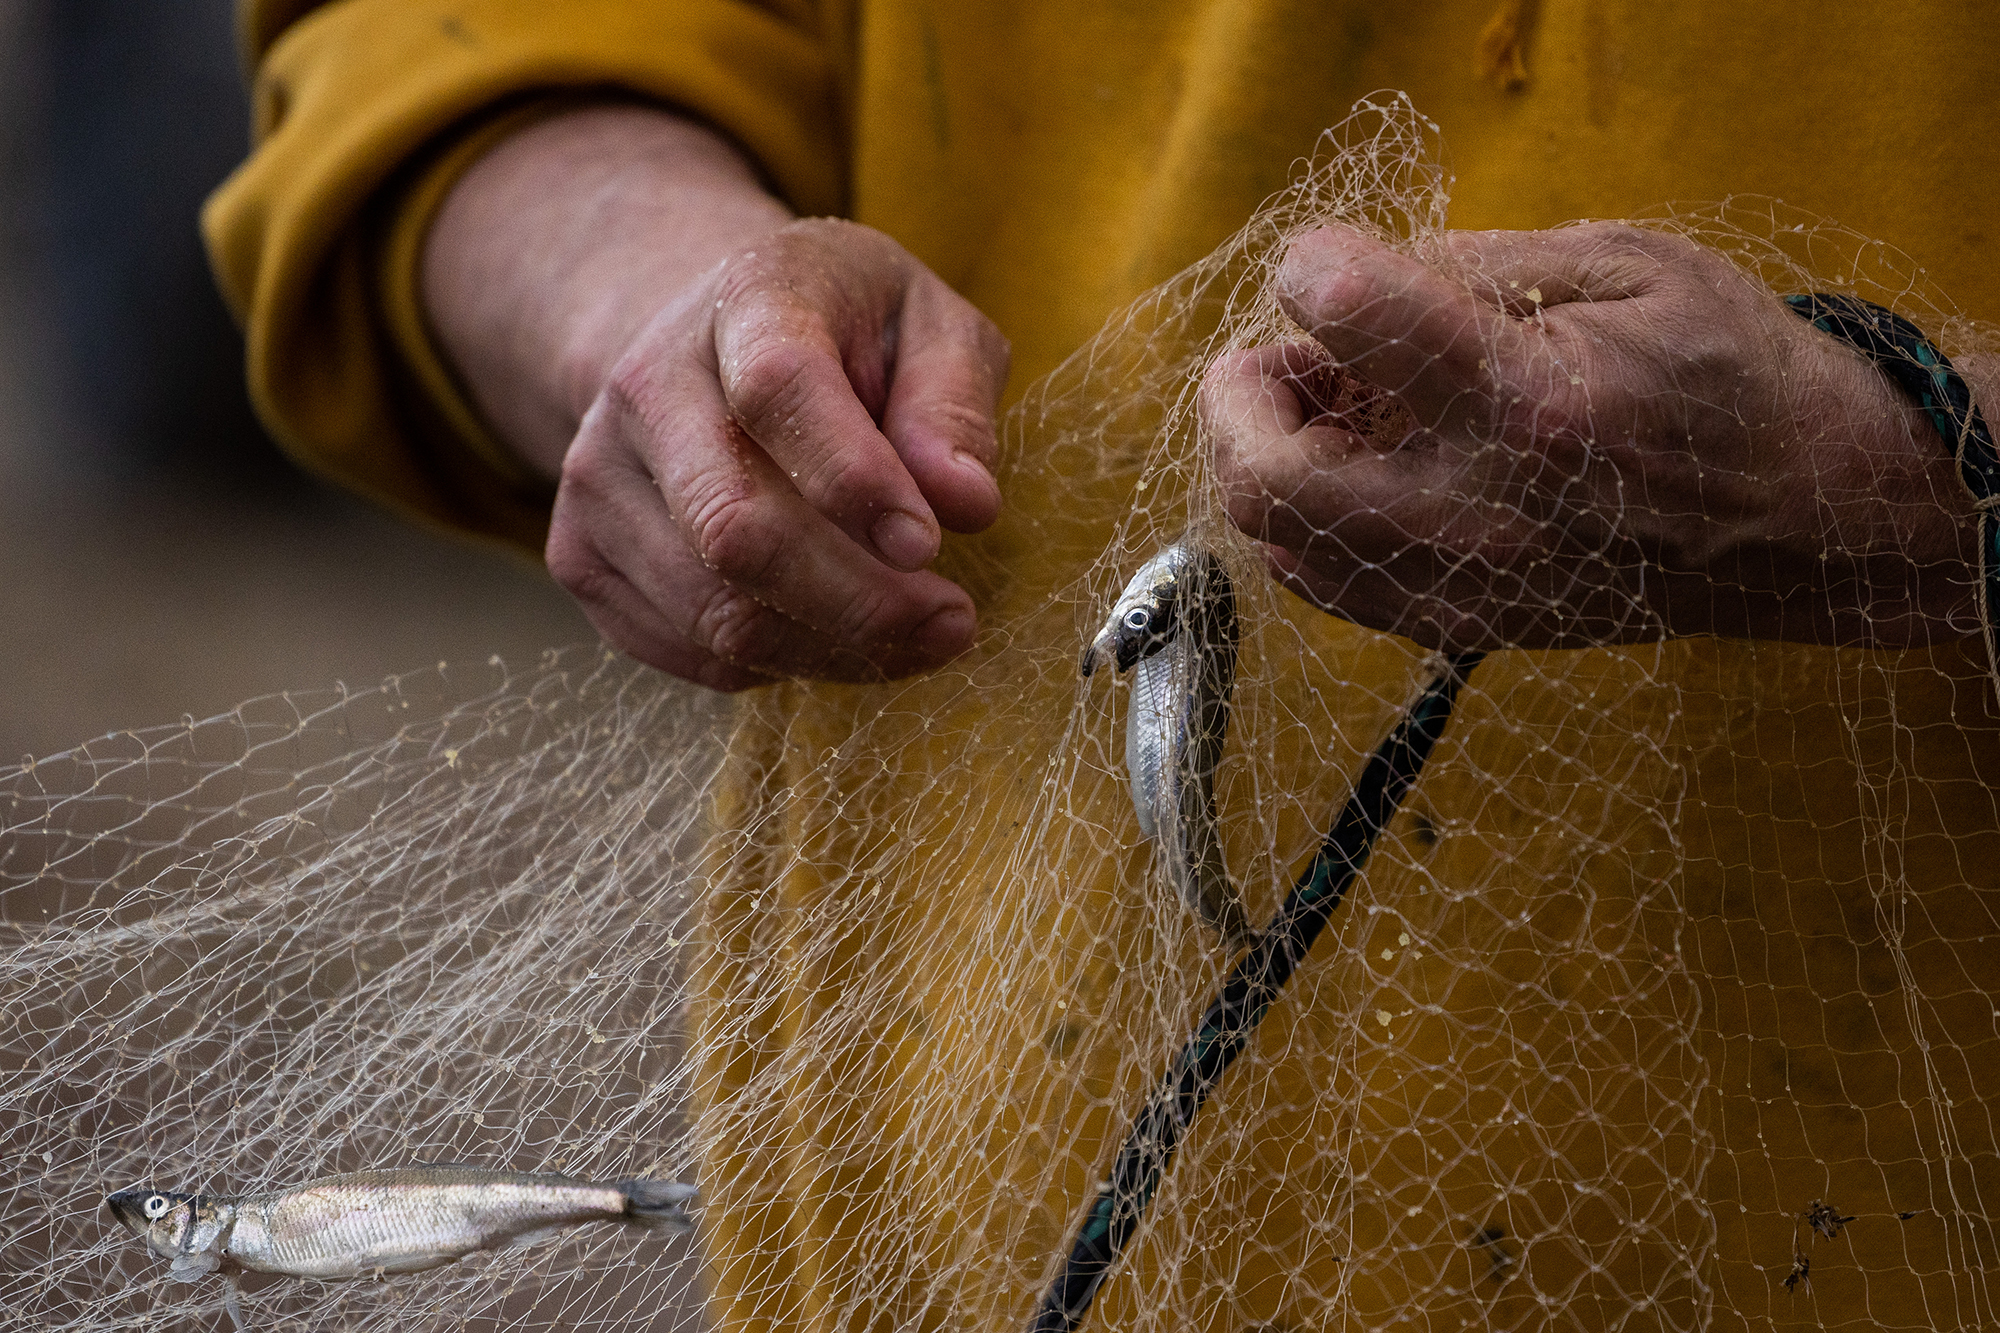 Hands detangling smelt caught in a fishing net.